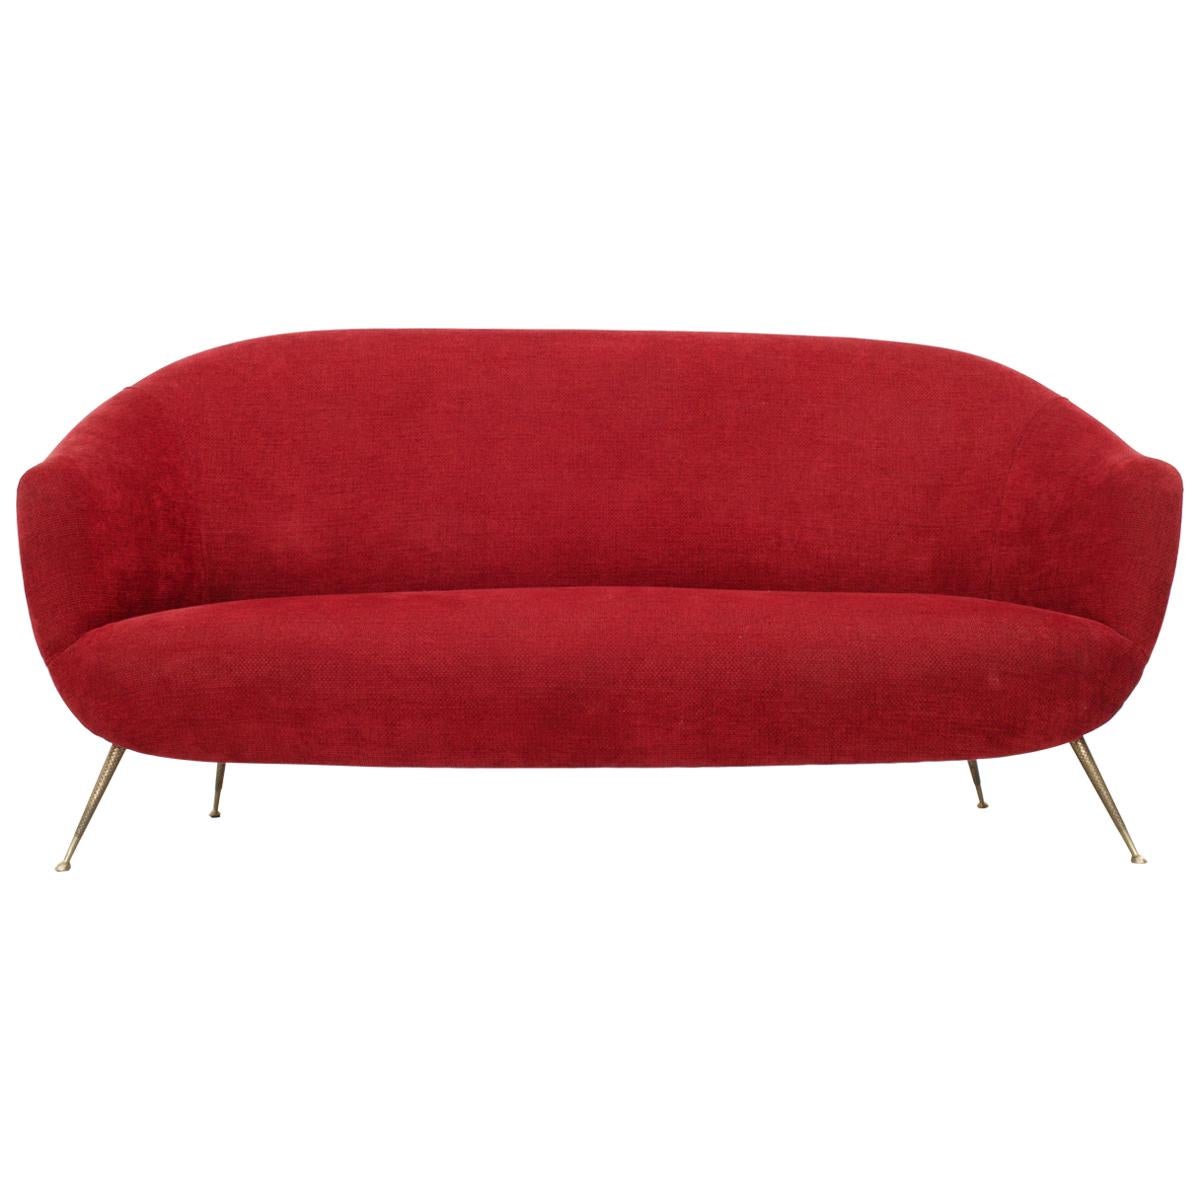 Bequemes und einladendes Dreisitzsofa mit Messingfüßen. Ein elegantes Sofa, das ein wenig an einen Mund mit roten Lippen erinnert. Die Beine, die ein wenig nach außen stehen, sind ziemlich minimal, aber weil sie aus Messing hergestellt wurden, sind